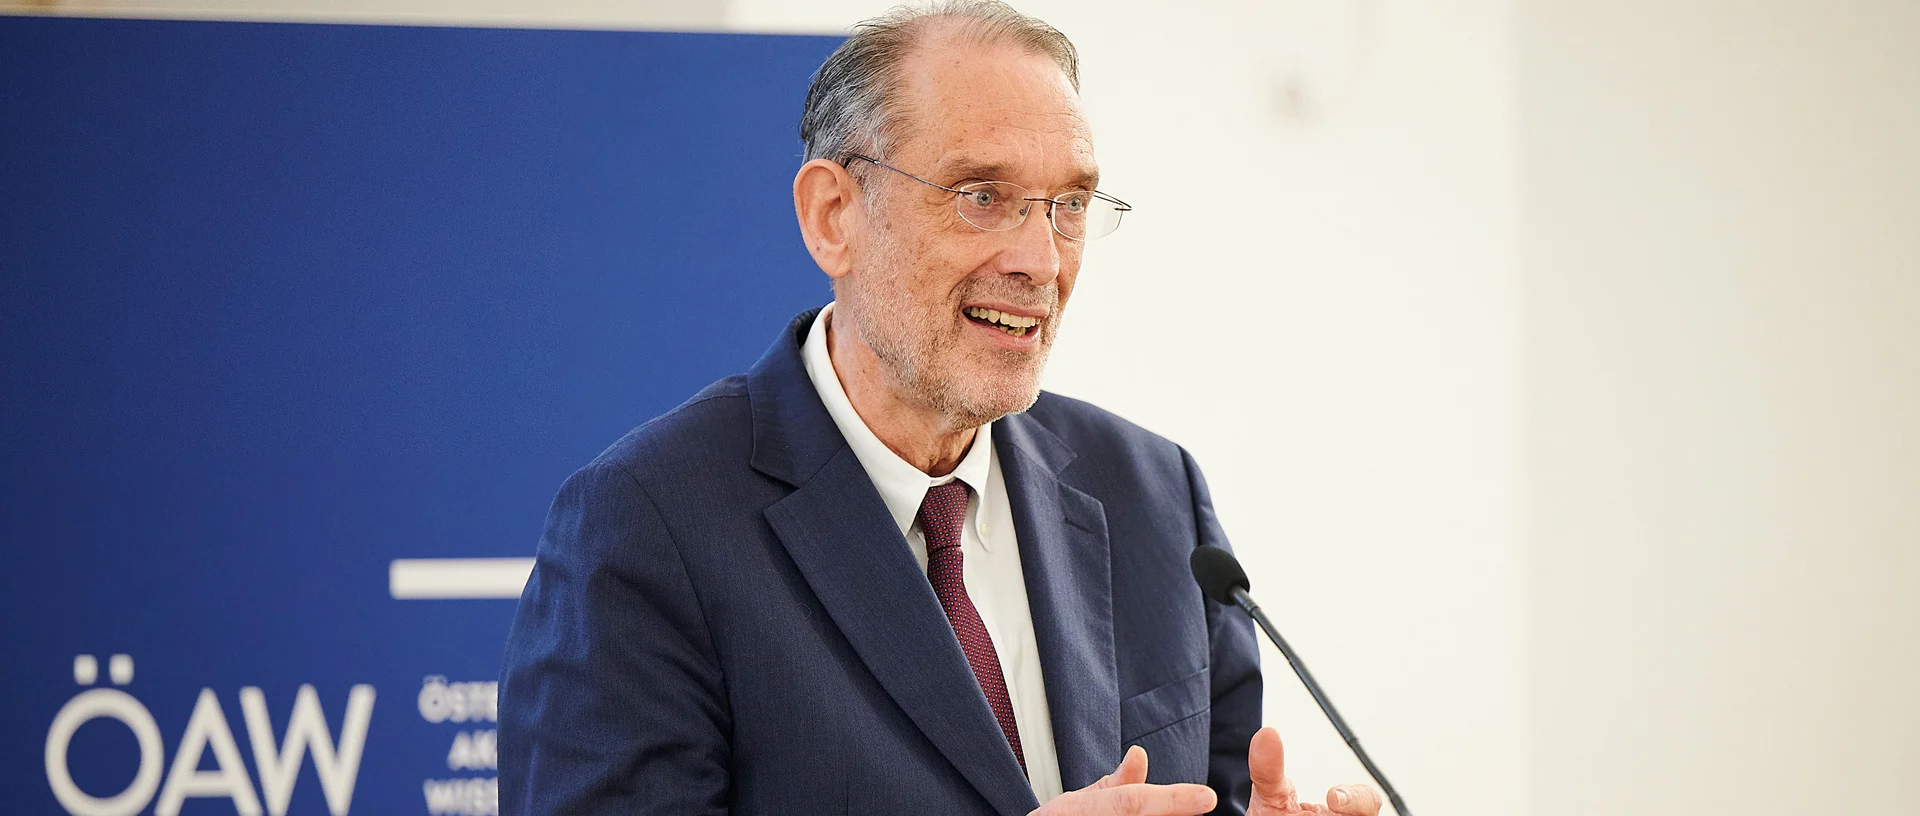 ÖAW-Präsident Heinz Faßmann steht am Podium und erklärt Ergebnisse des Wissenschaftsbarometers